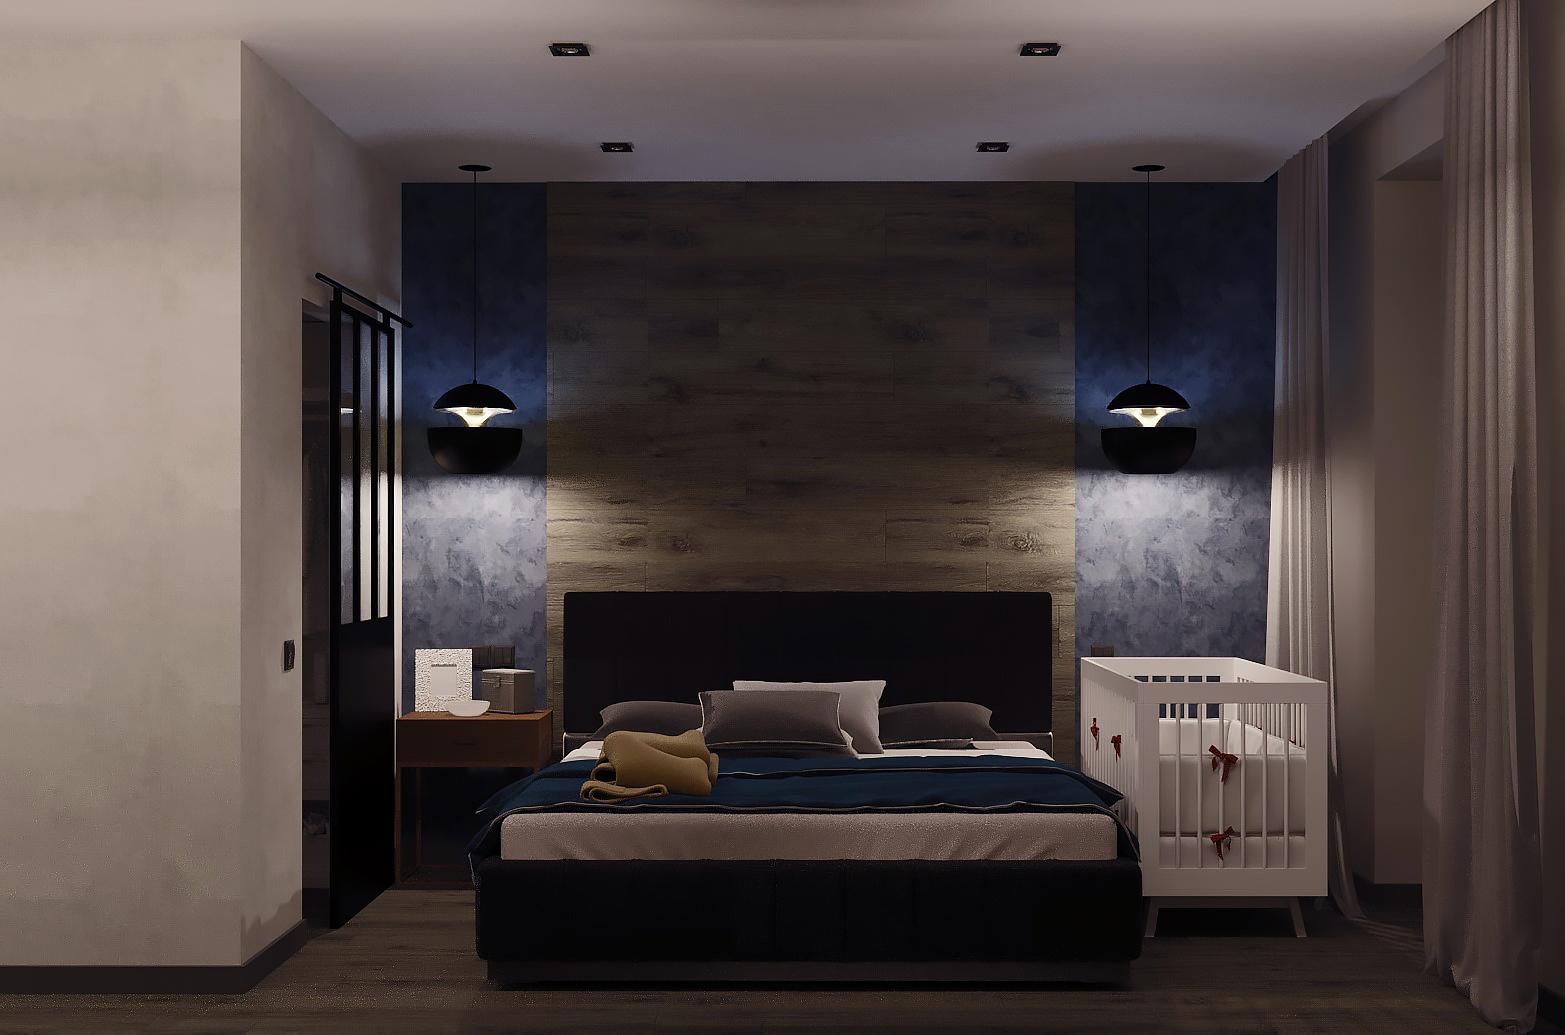 Интерьер спальни с подсветкой настенной, подсветкой светодиодной и светильниками над кроватью